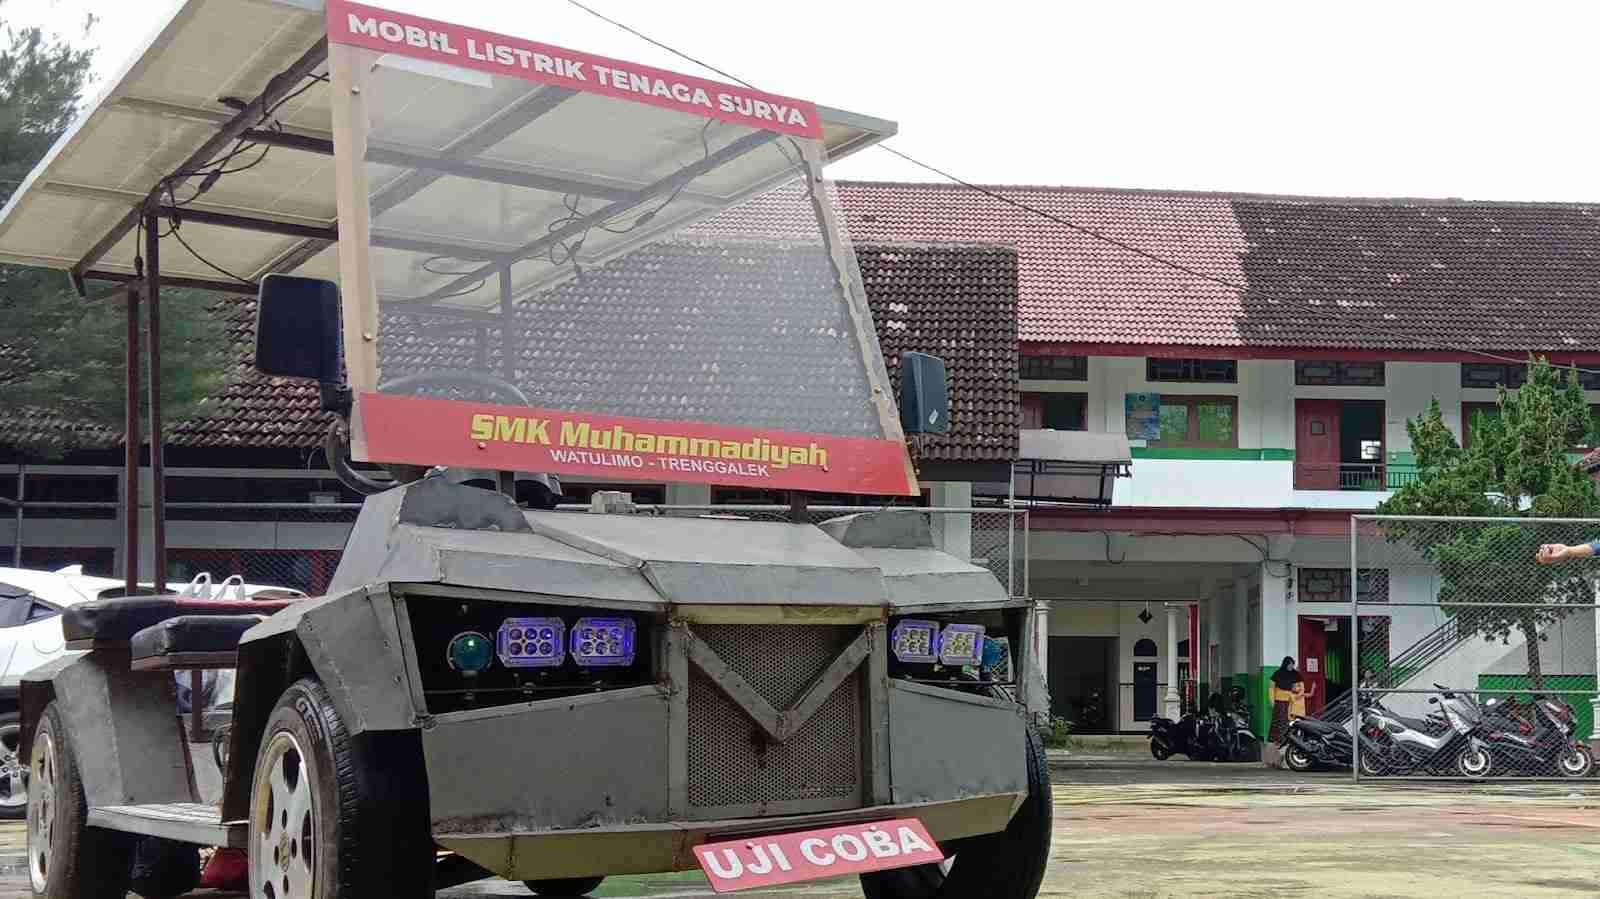 Lirik Potensi Wisata, SMK Muhammadiyah Watulimo Trenggalek Ciptakan Mobil Listrik Tenaga Surya